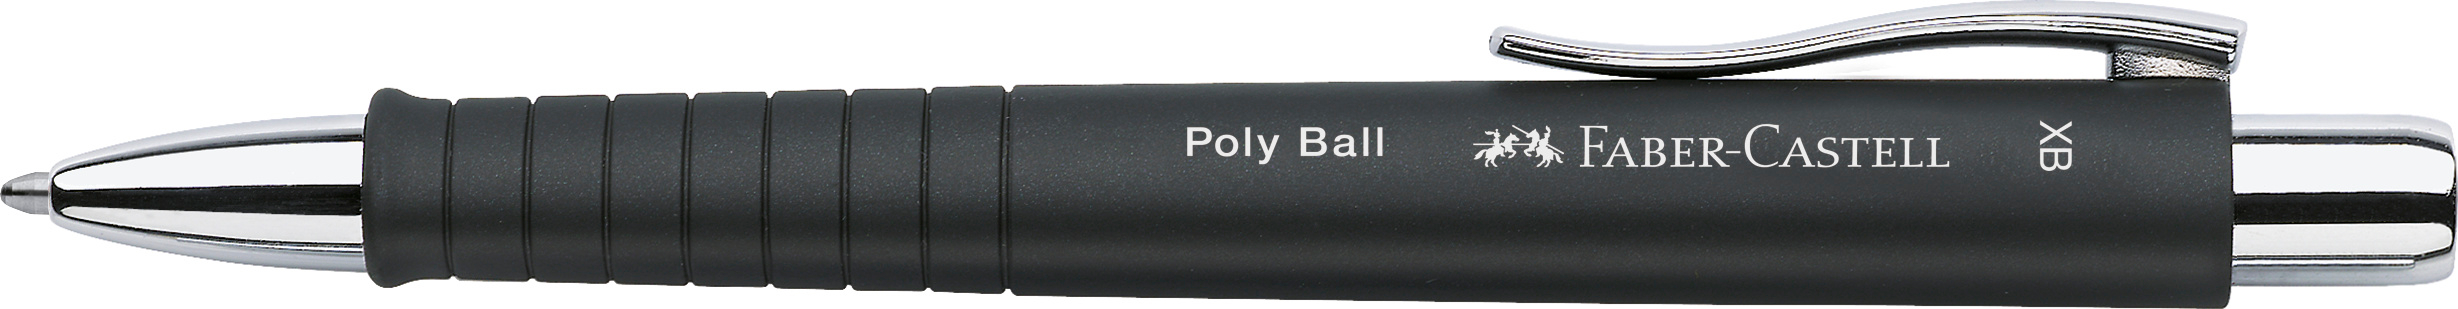 FABER-CASTELL Kugelschreiber Poly Ball XB schwarz<br>